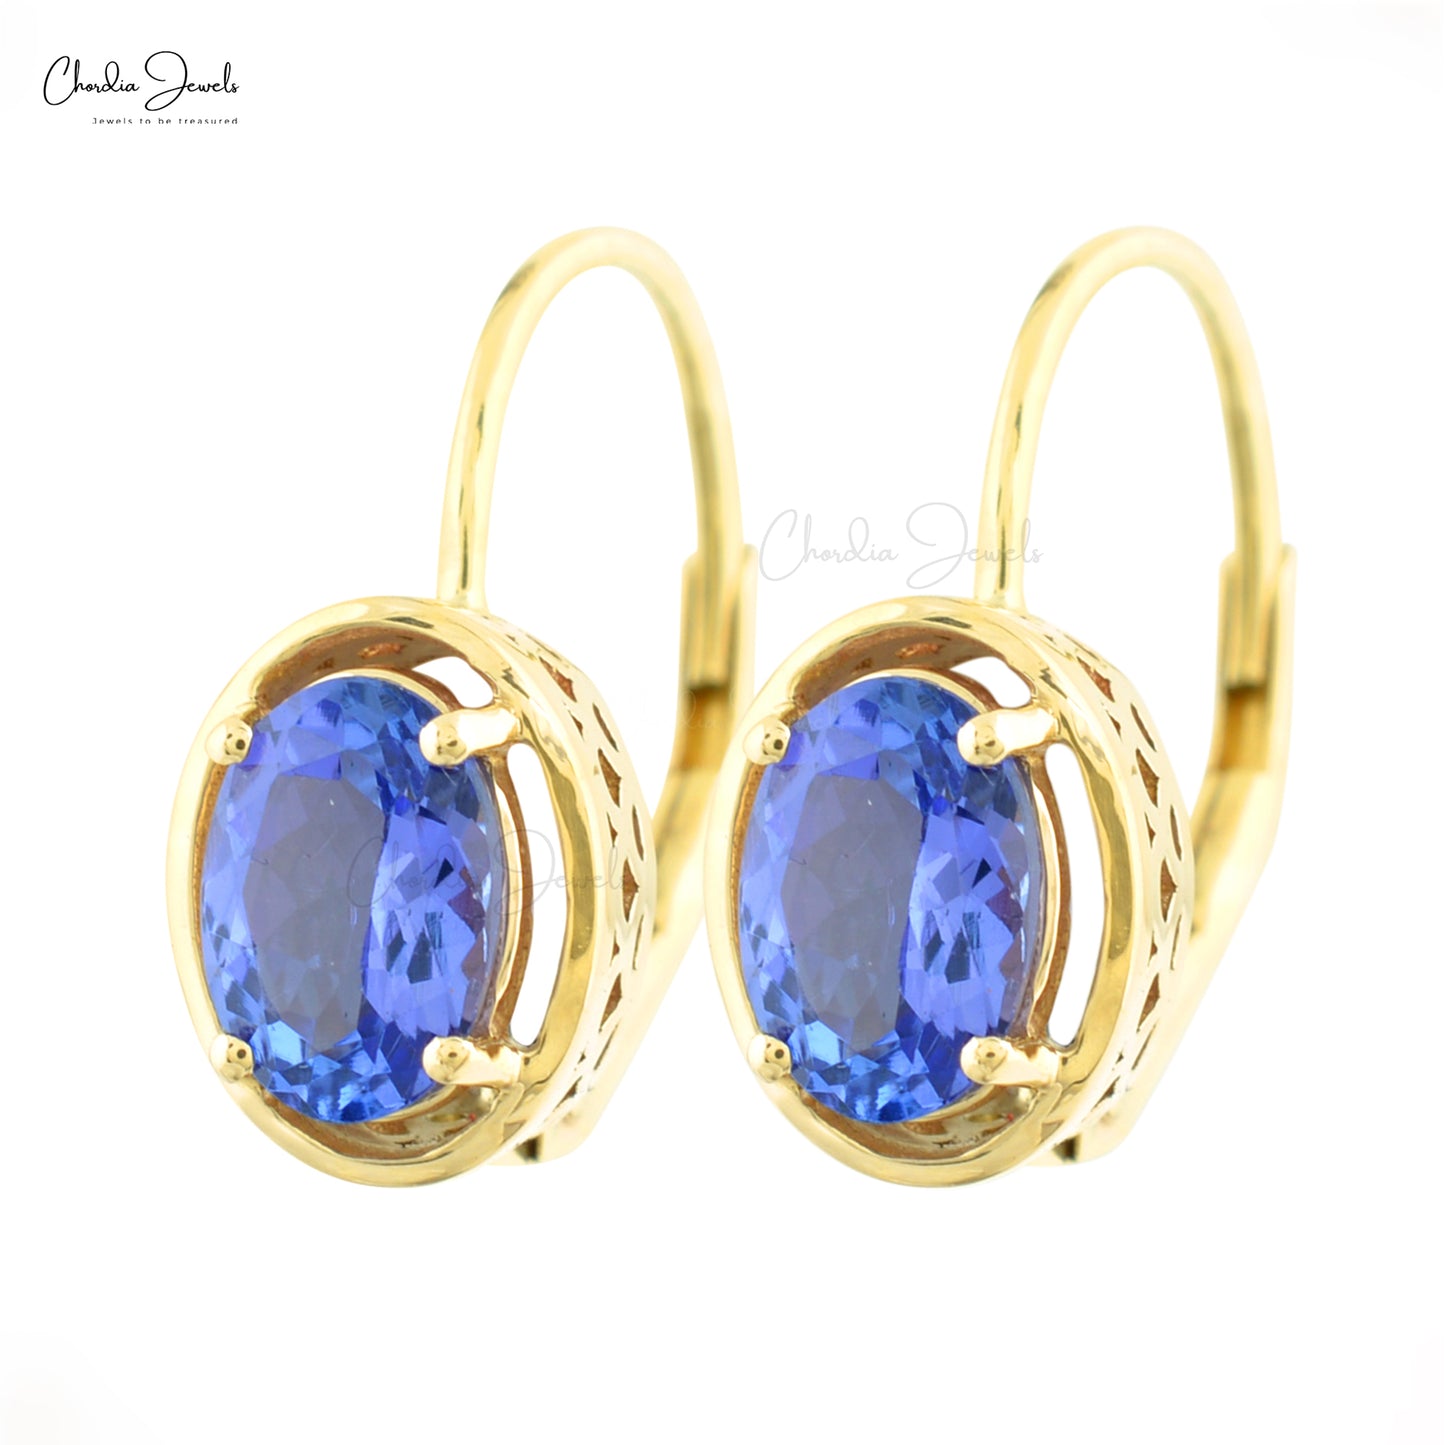 oval tanzanite earrings